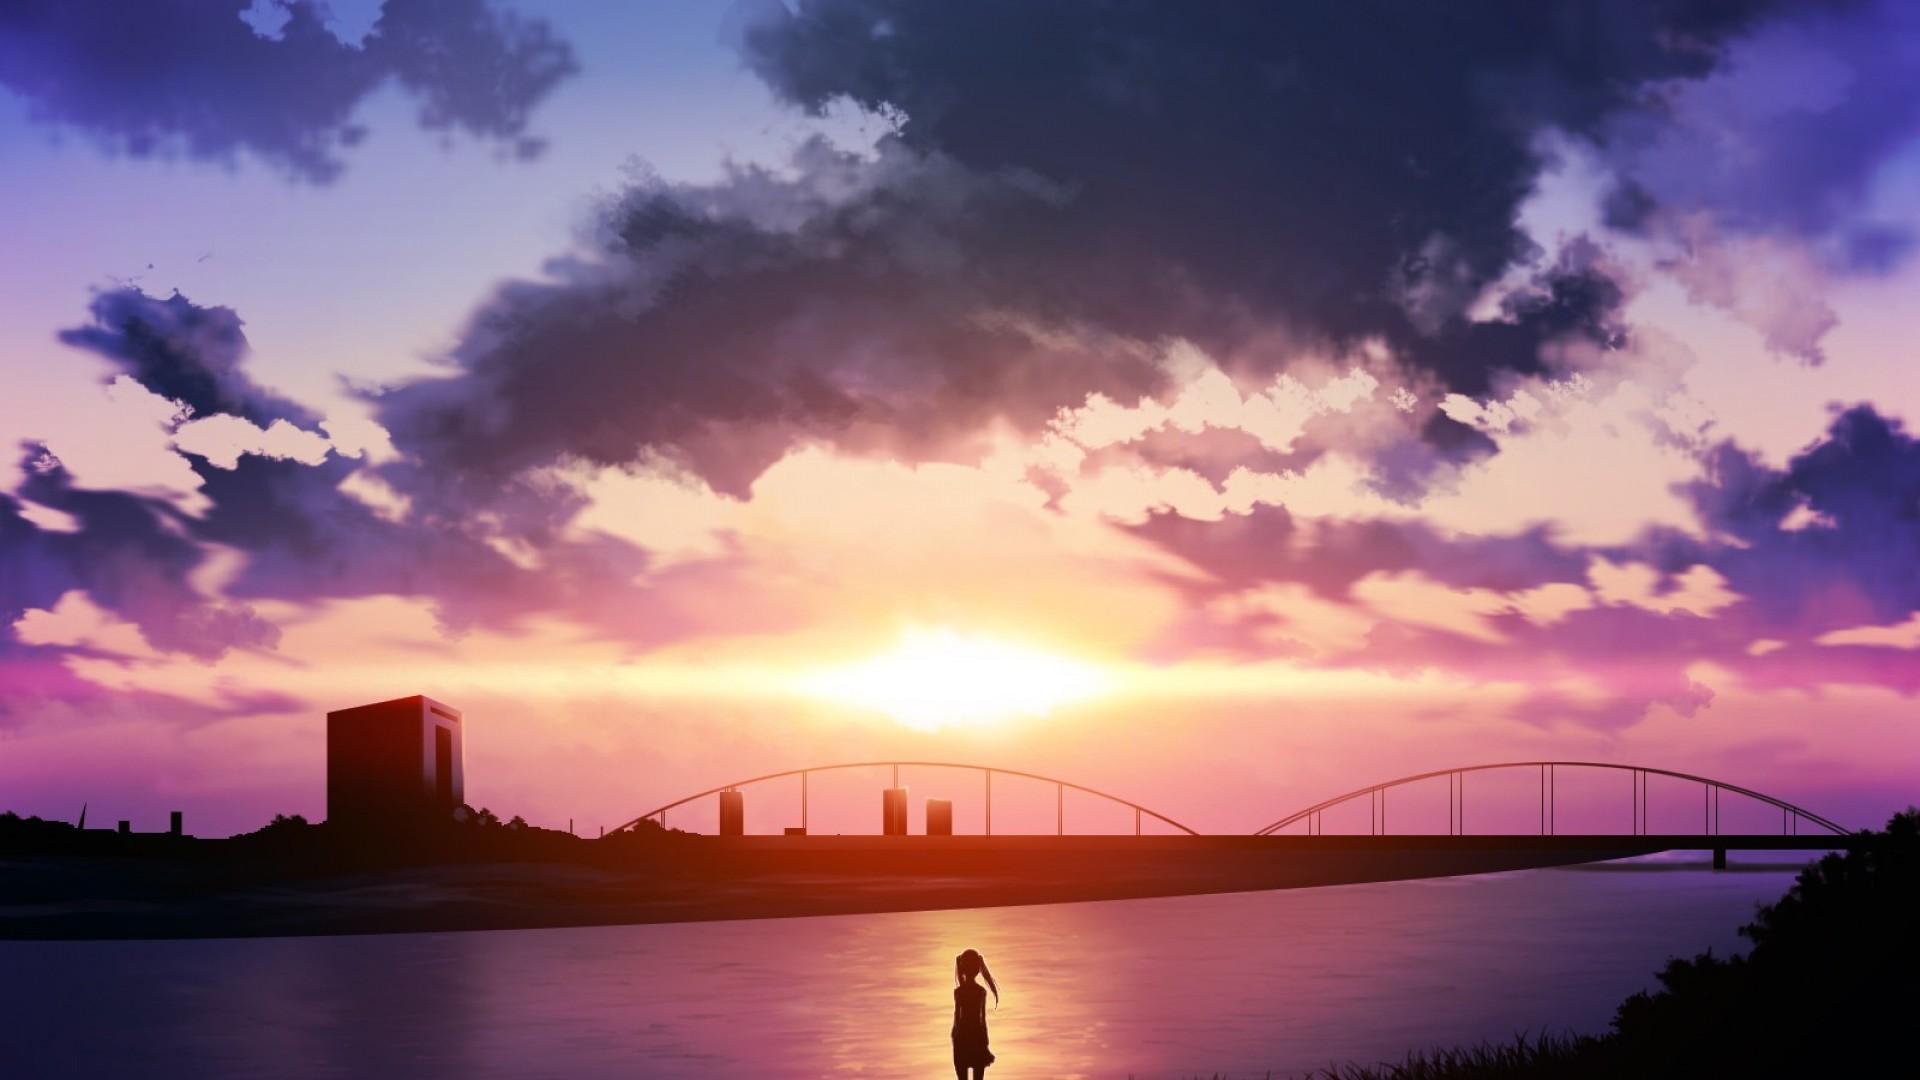 Nền tảng anime hoàng hôn đầy màu sắc sẽ đưa bạn bước vào một thế giới đẹp như mộng. Cảnh đẹp rực rỡ của hoàng hôn và phong cách anime sẽ đem lại cho bạn nhiều cảm xúc đong đầy yêu thương và ấm áp.